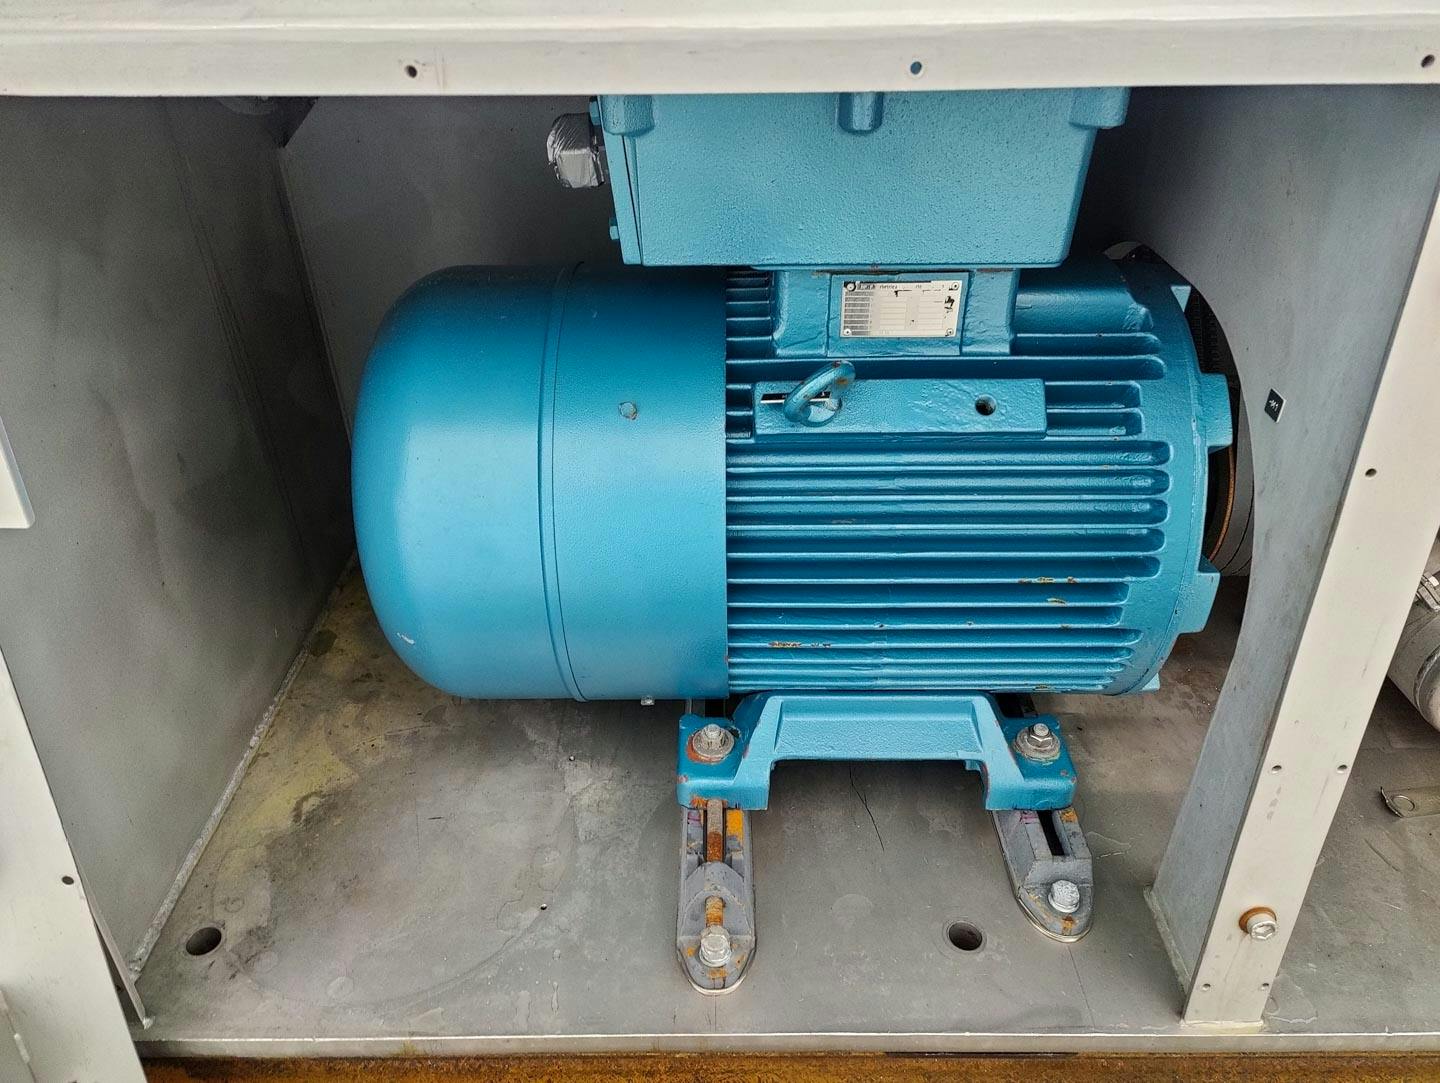 Fima Process Trockner TZT-1300 - centrifuge dryer - Trommelcentrifuge - image 12